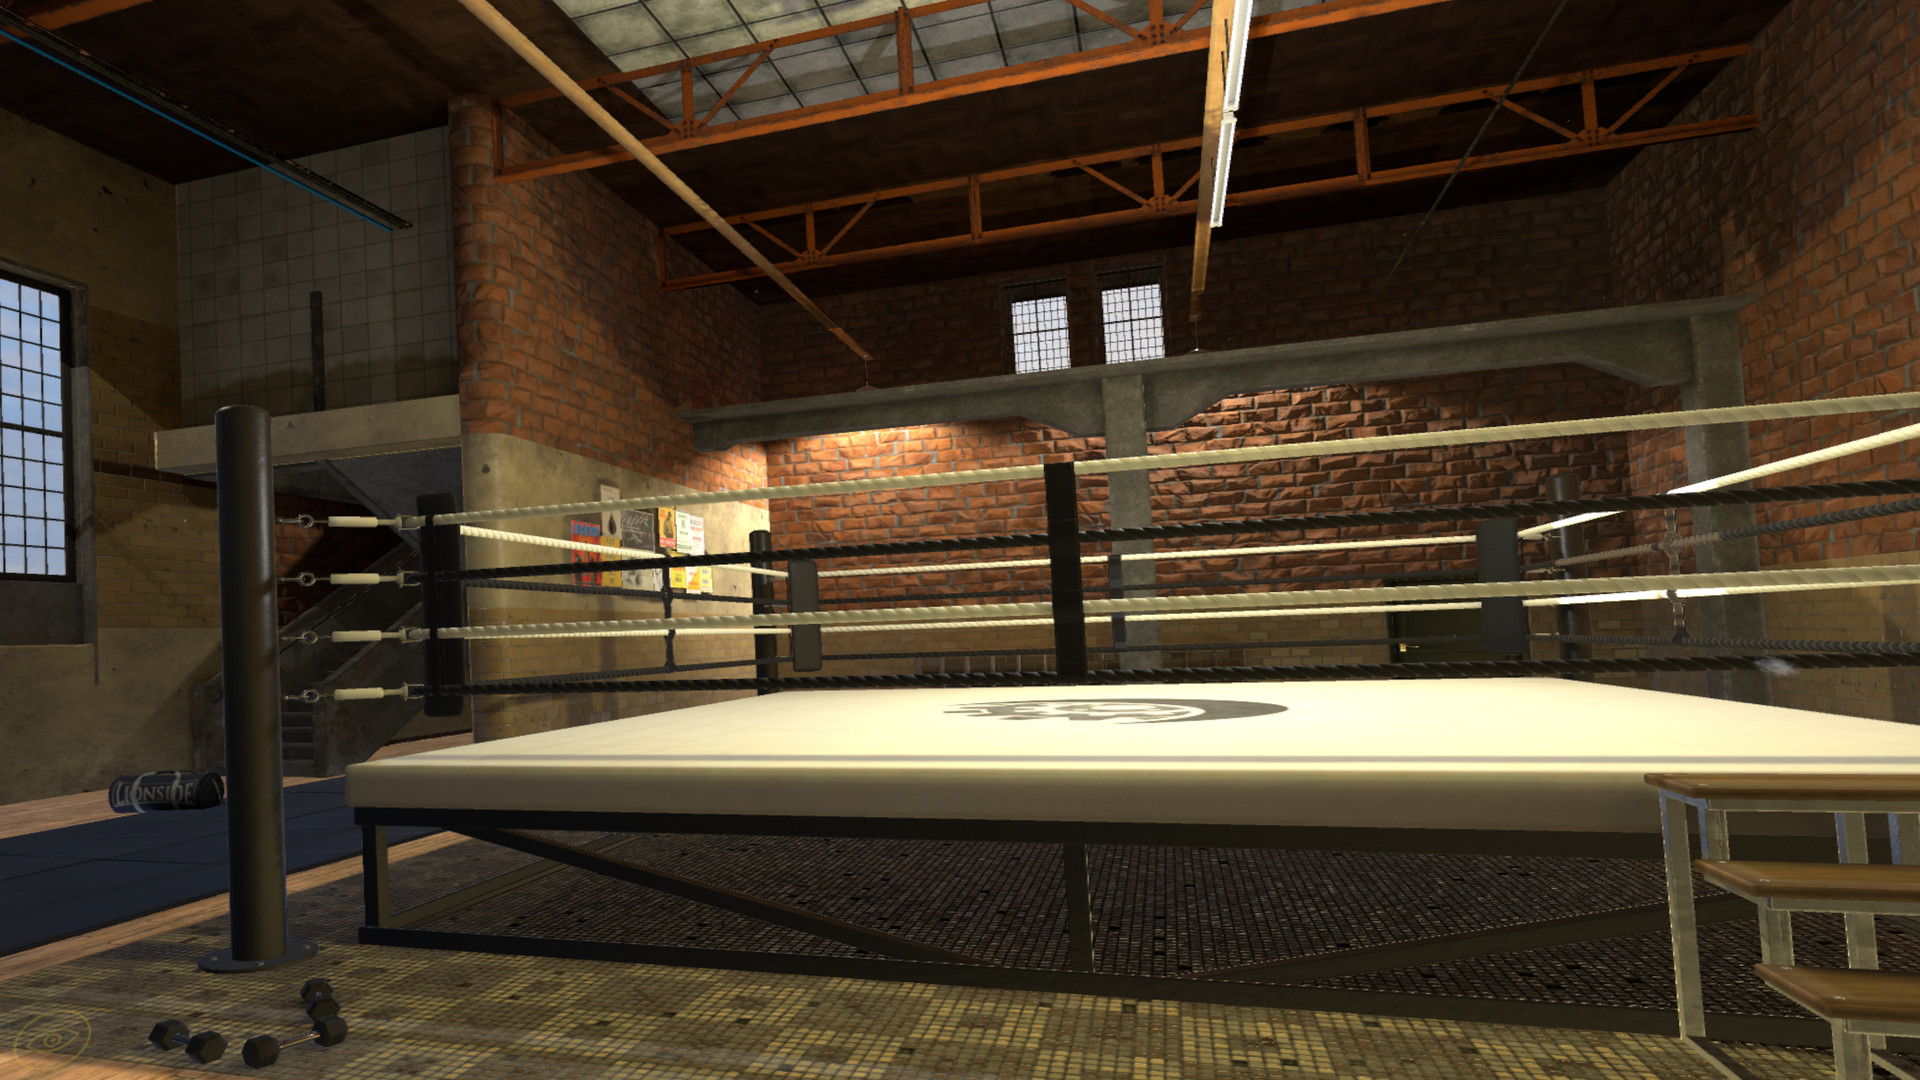 Oculus Quest 游戏《战斗时代：拳击》Era of Combat: Boxing VR